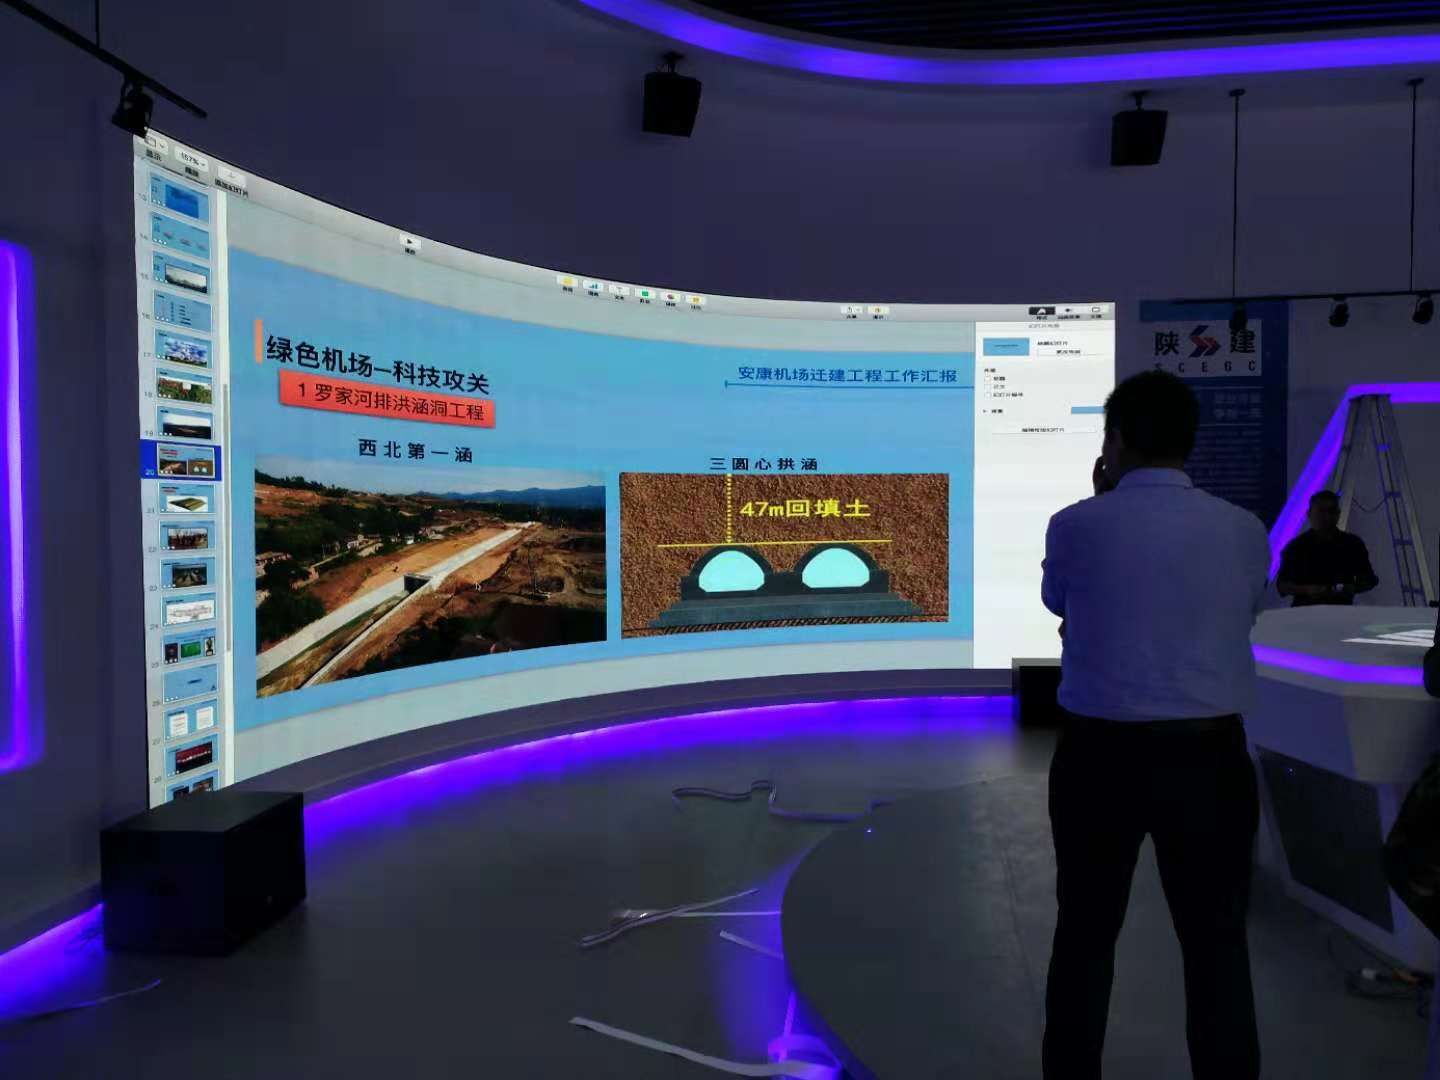 安康机场弧幕投影融合、桌面投影、双屏联动、智能中控系统方案实例